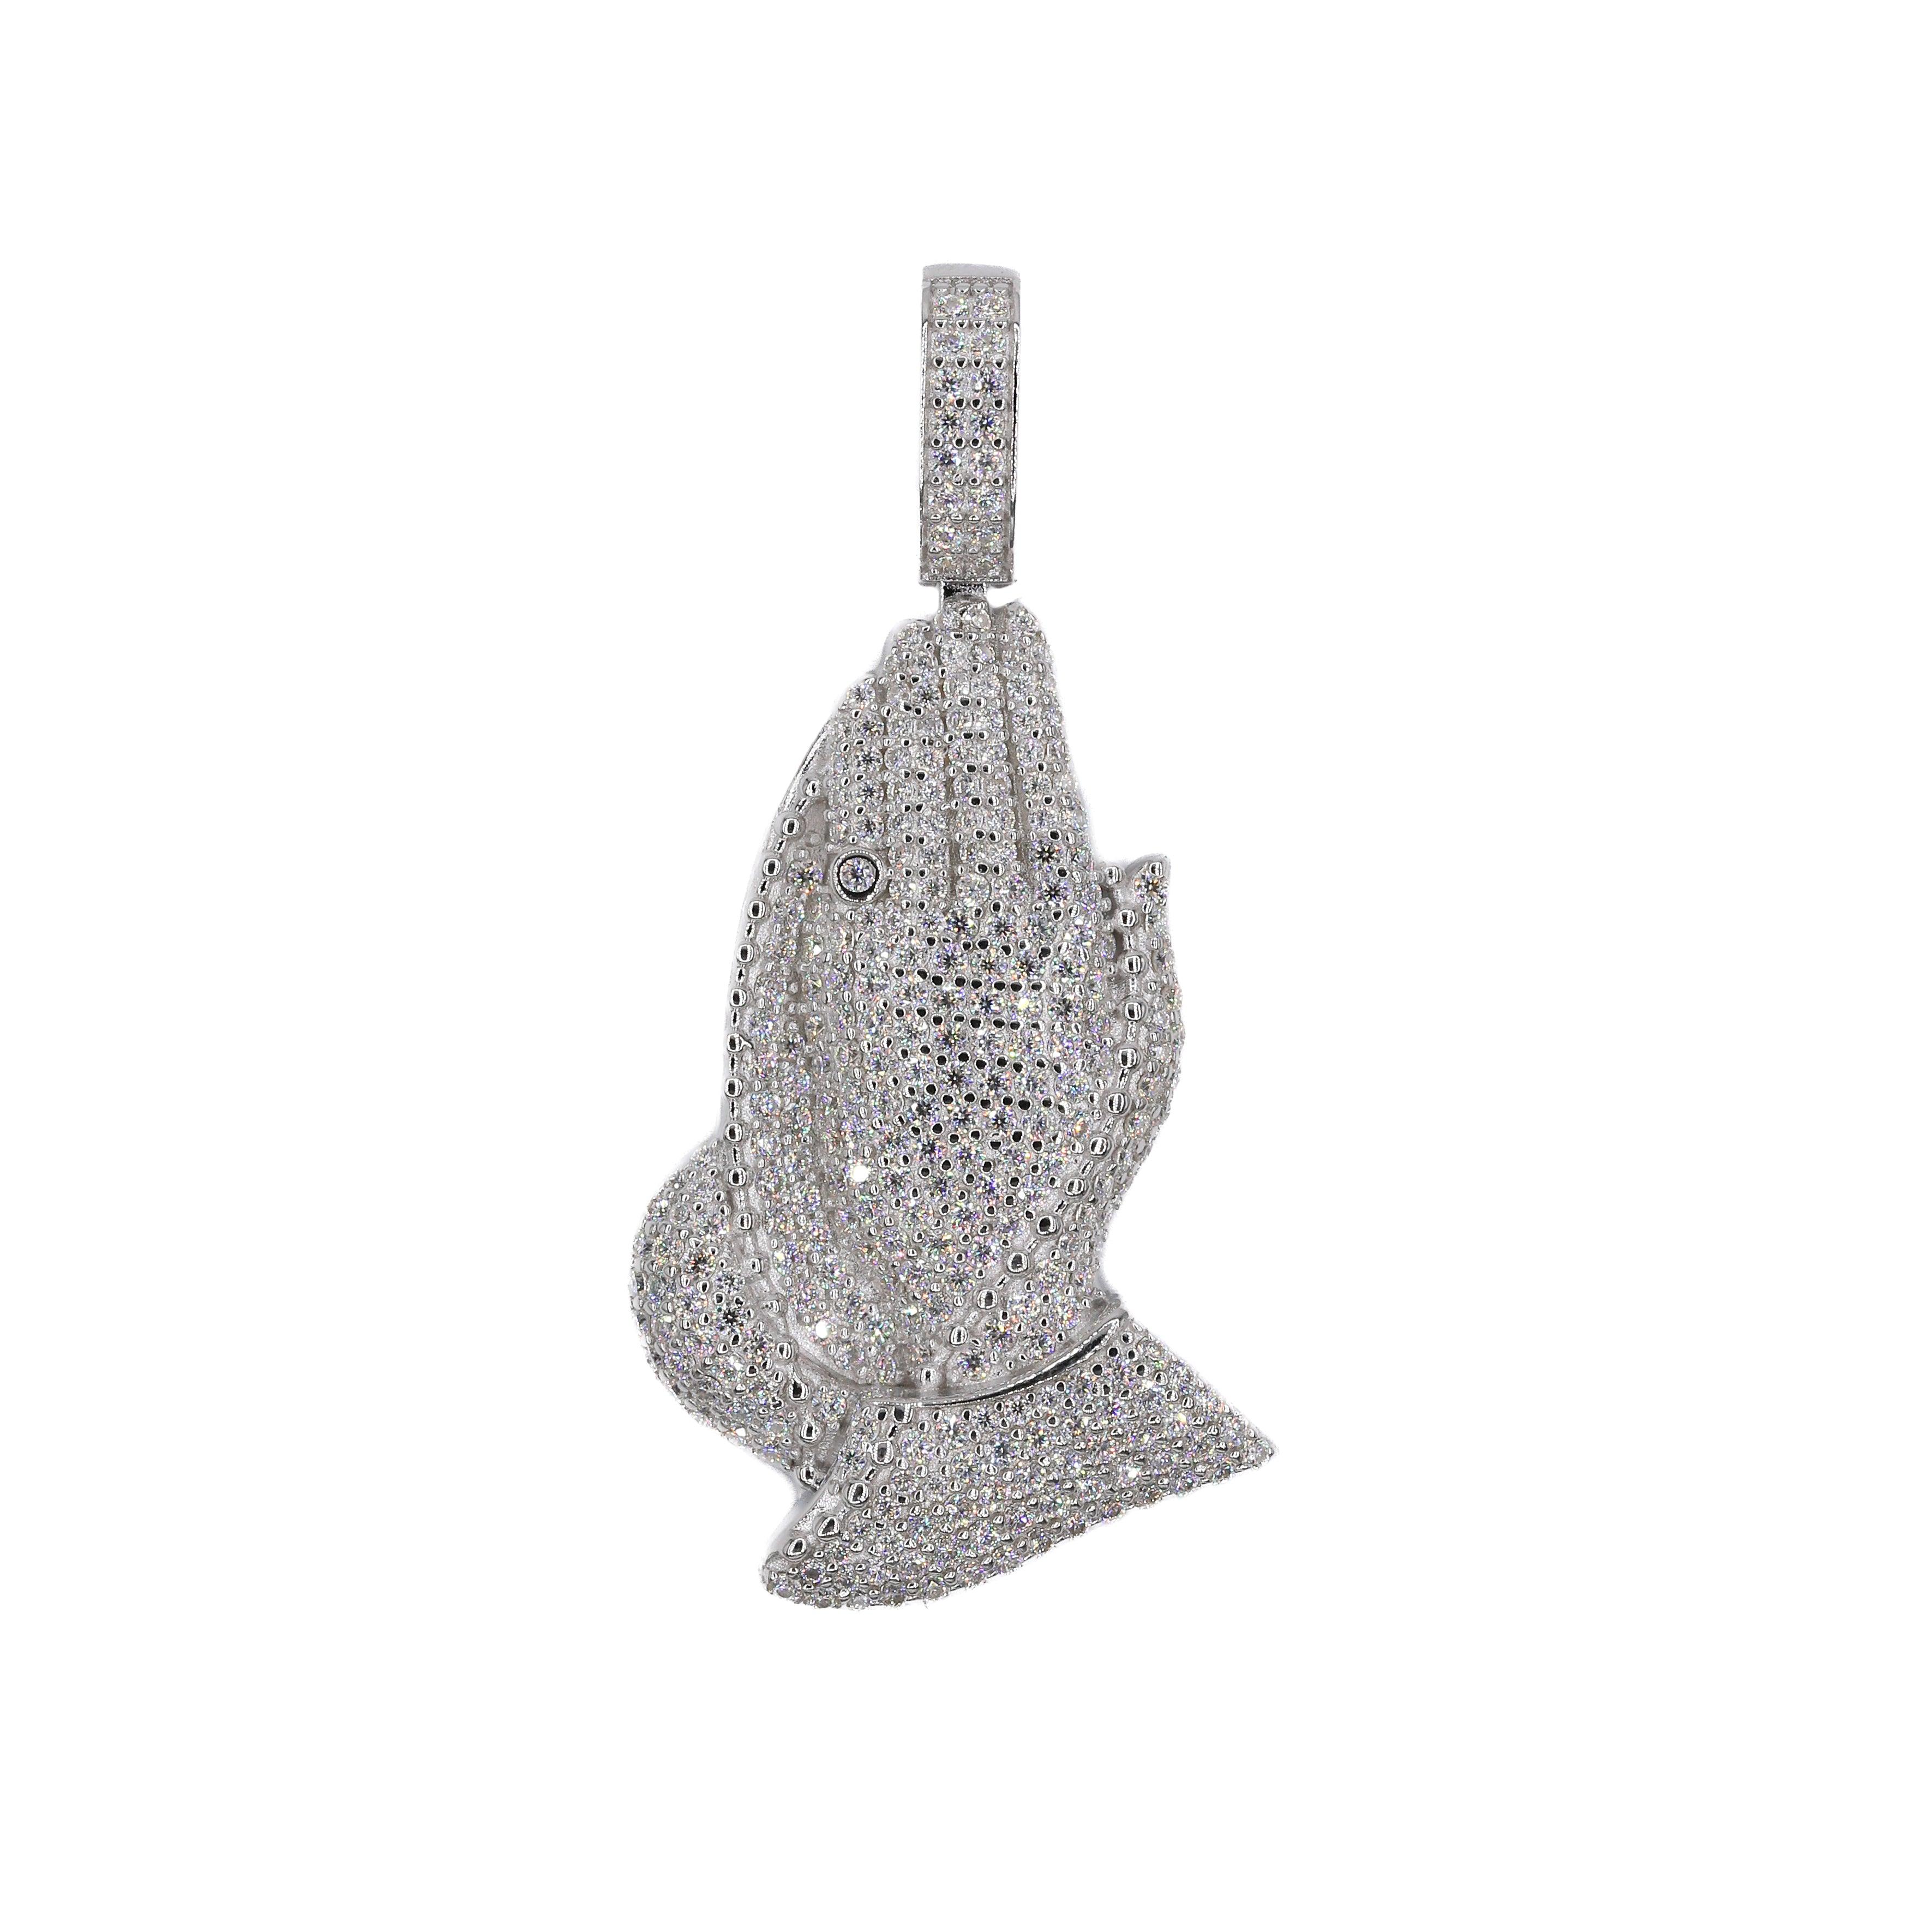 Fully Iced Praying Hands VVS Moissanite Diamonds Pendant - Moissanite Bazaar - moissanitebazaar.com